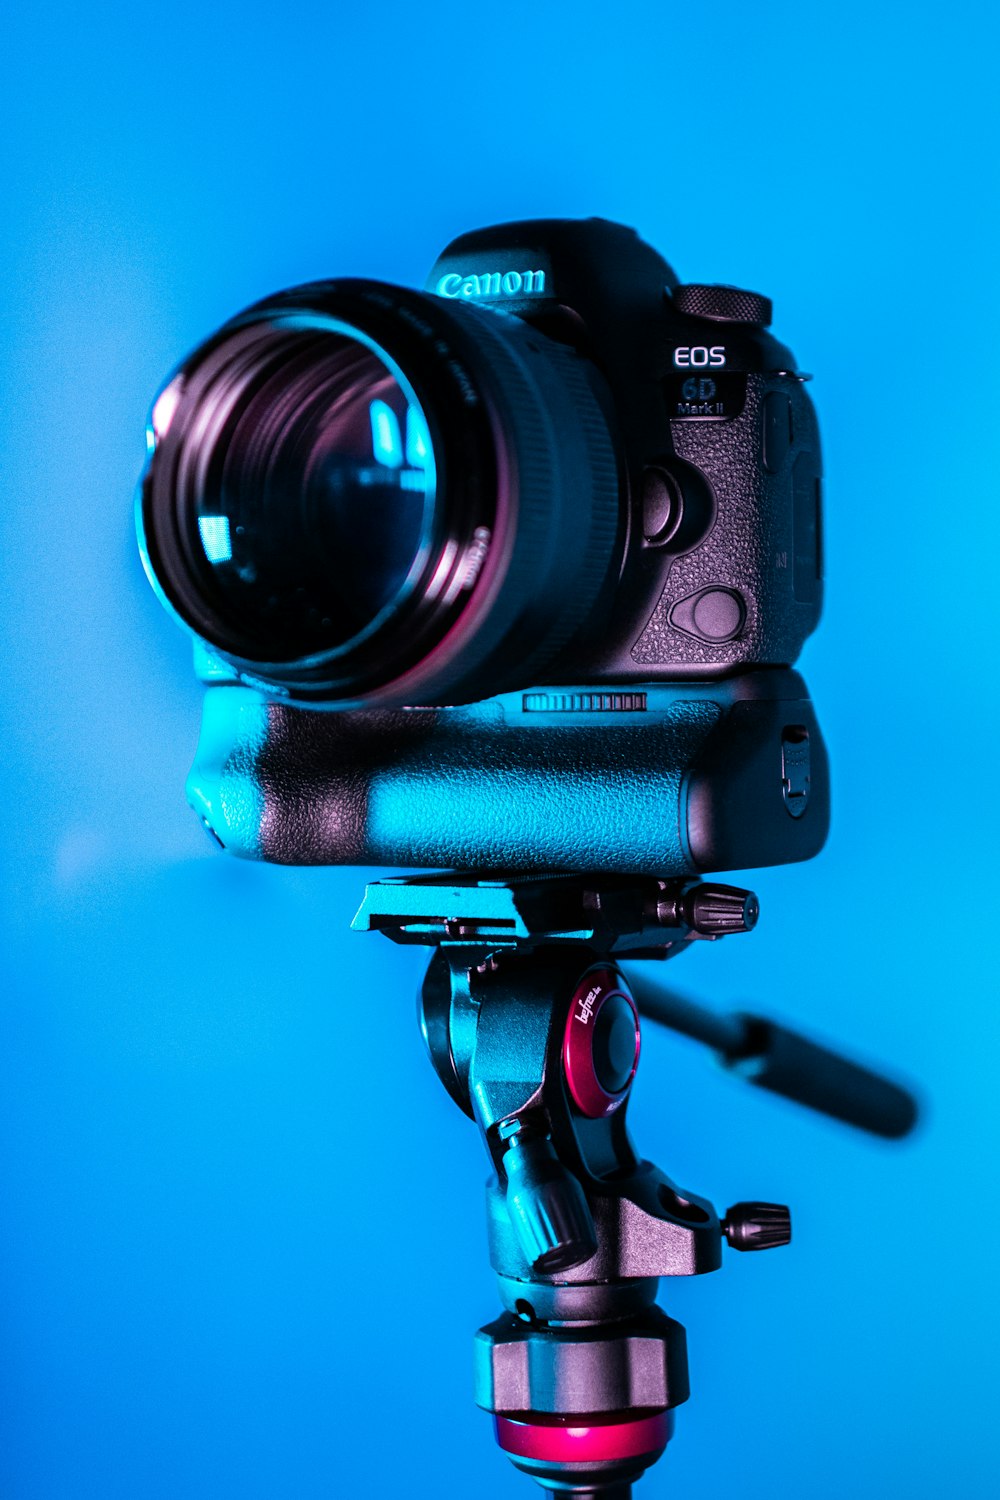 Bạn đam mê nhiếp ảnh và đang muốn tìm kiếm một chiếc máy ảnh chất lượng? Hãy xem ảnh máy ảnh Canon EOS DSLR đen với chân và điện tử miễn phí, và biết thêm về thiết kế đa năng của chiếc máy ảnh này.